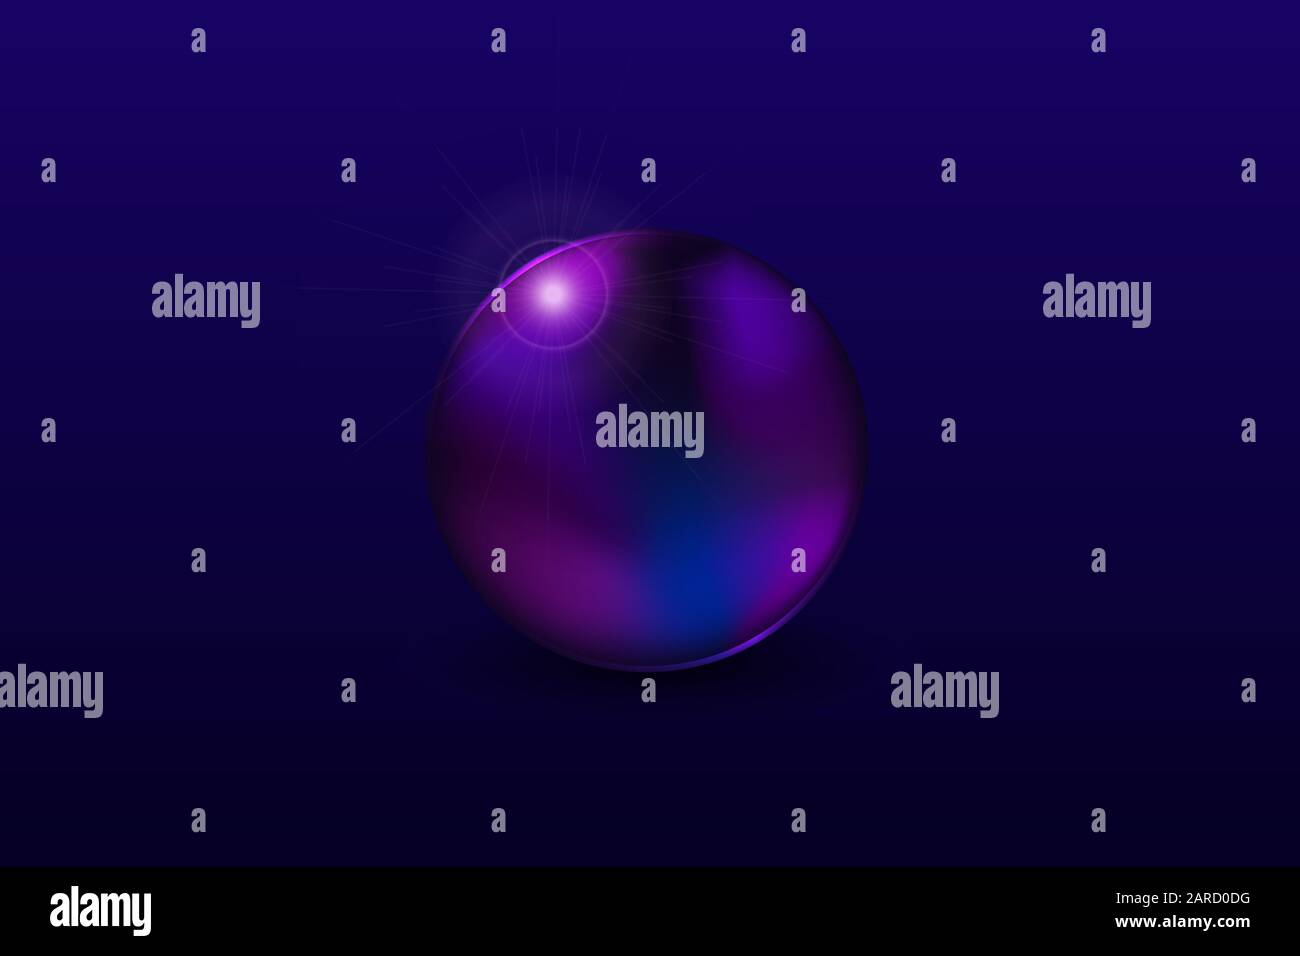 Objectif objet cercle abstrait avec sphère sphérique magique à réflexion ronde et lumière sur fond bleu foncé objet isolé Illustration de Vecteur